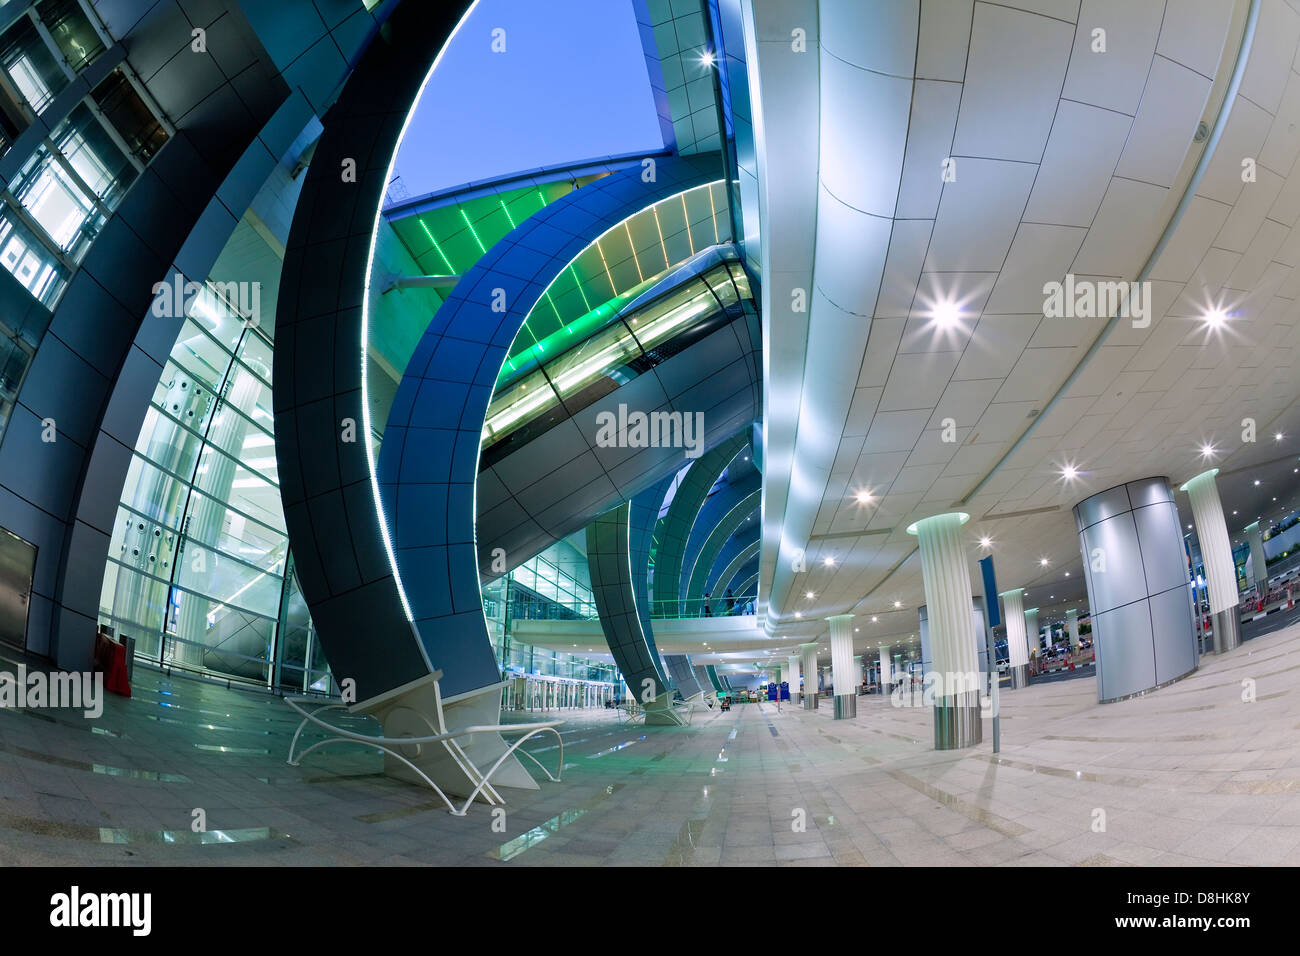 L'architecture moderne et élégante de la 2010 s'est ouvert la borne 3 de l'Aéroport International de Dubai, Dubaï, Émirats arabes unis, Émirats Arabes Unis Banque D'Images